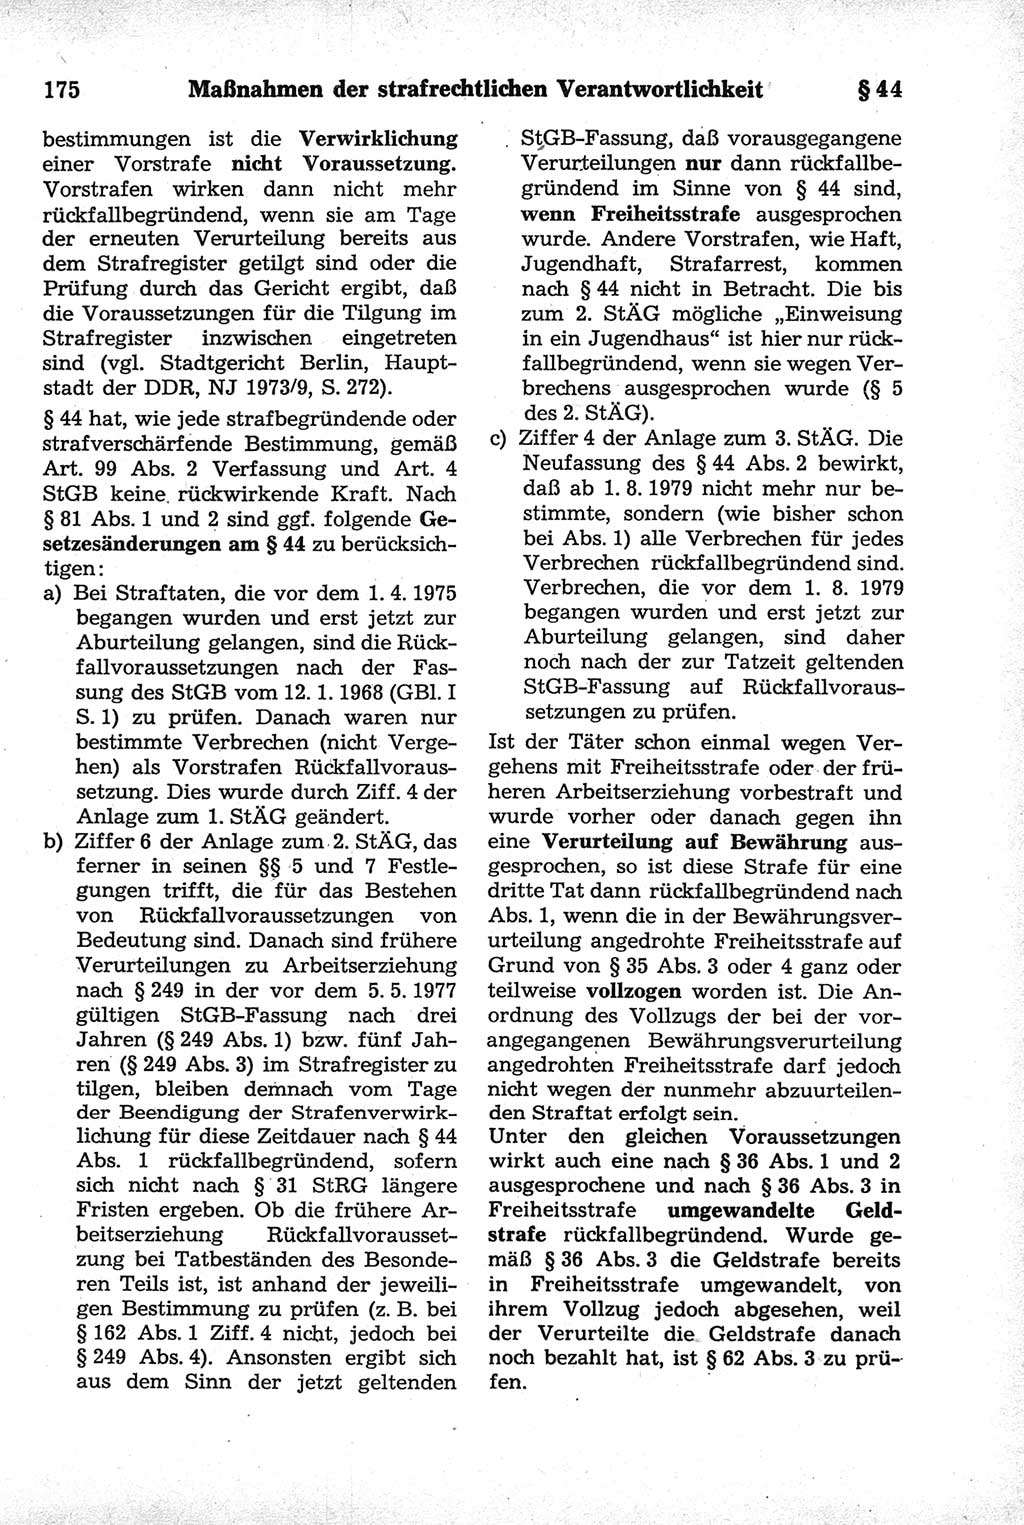 Strafrecht der Deutschen Demokratischen Republik (DDR), Kommentar zum Strafgesetzbuch (StGB) 1981, Seite 175 (Strafr. DDR Komm. StGB 1981, S. 175)